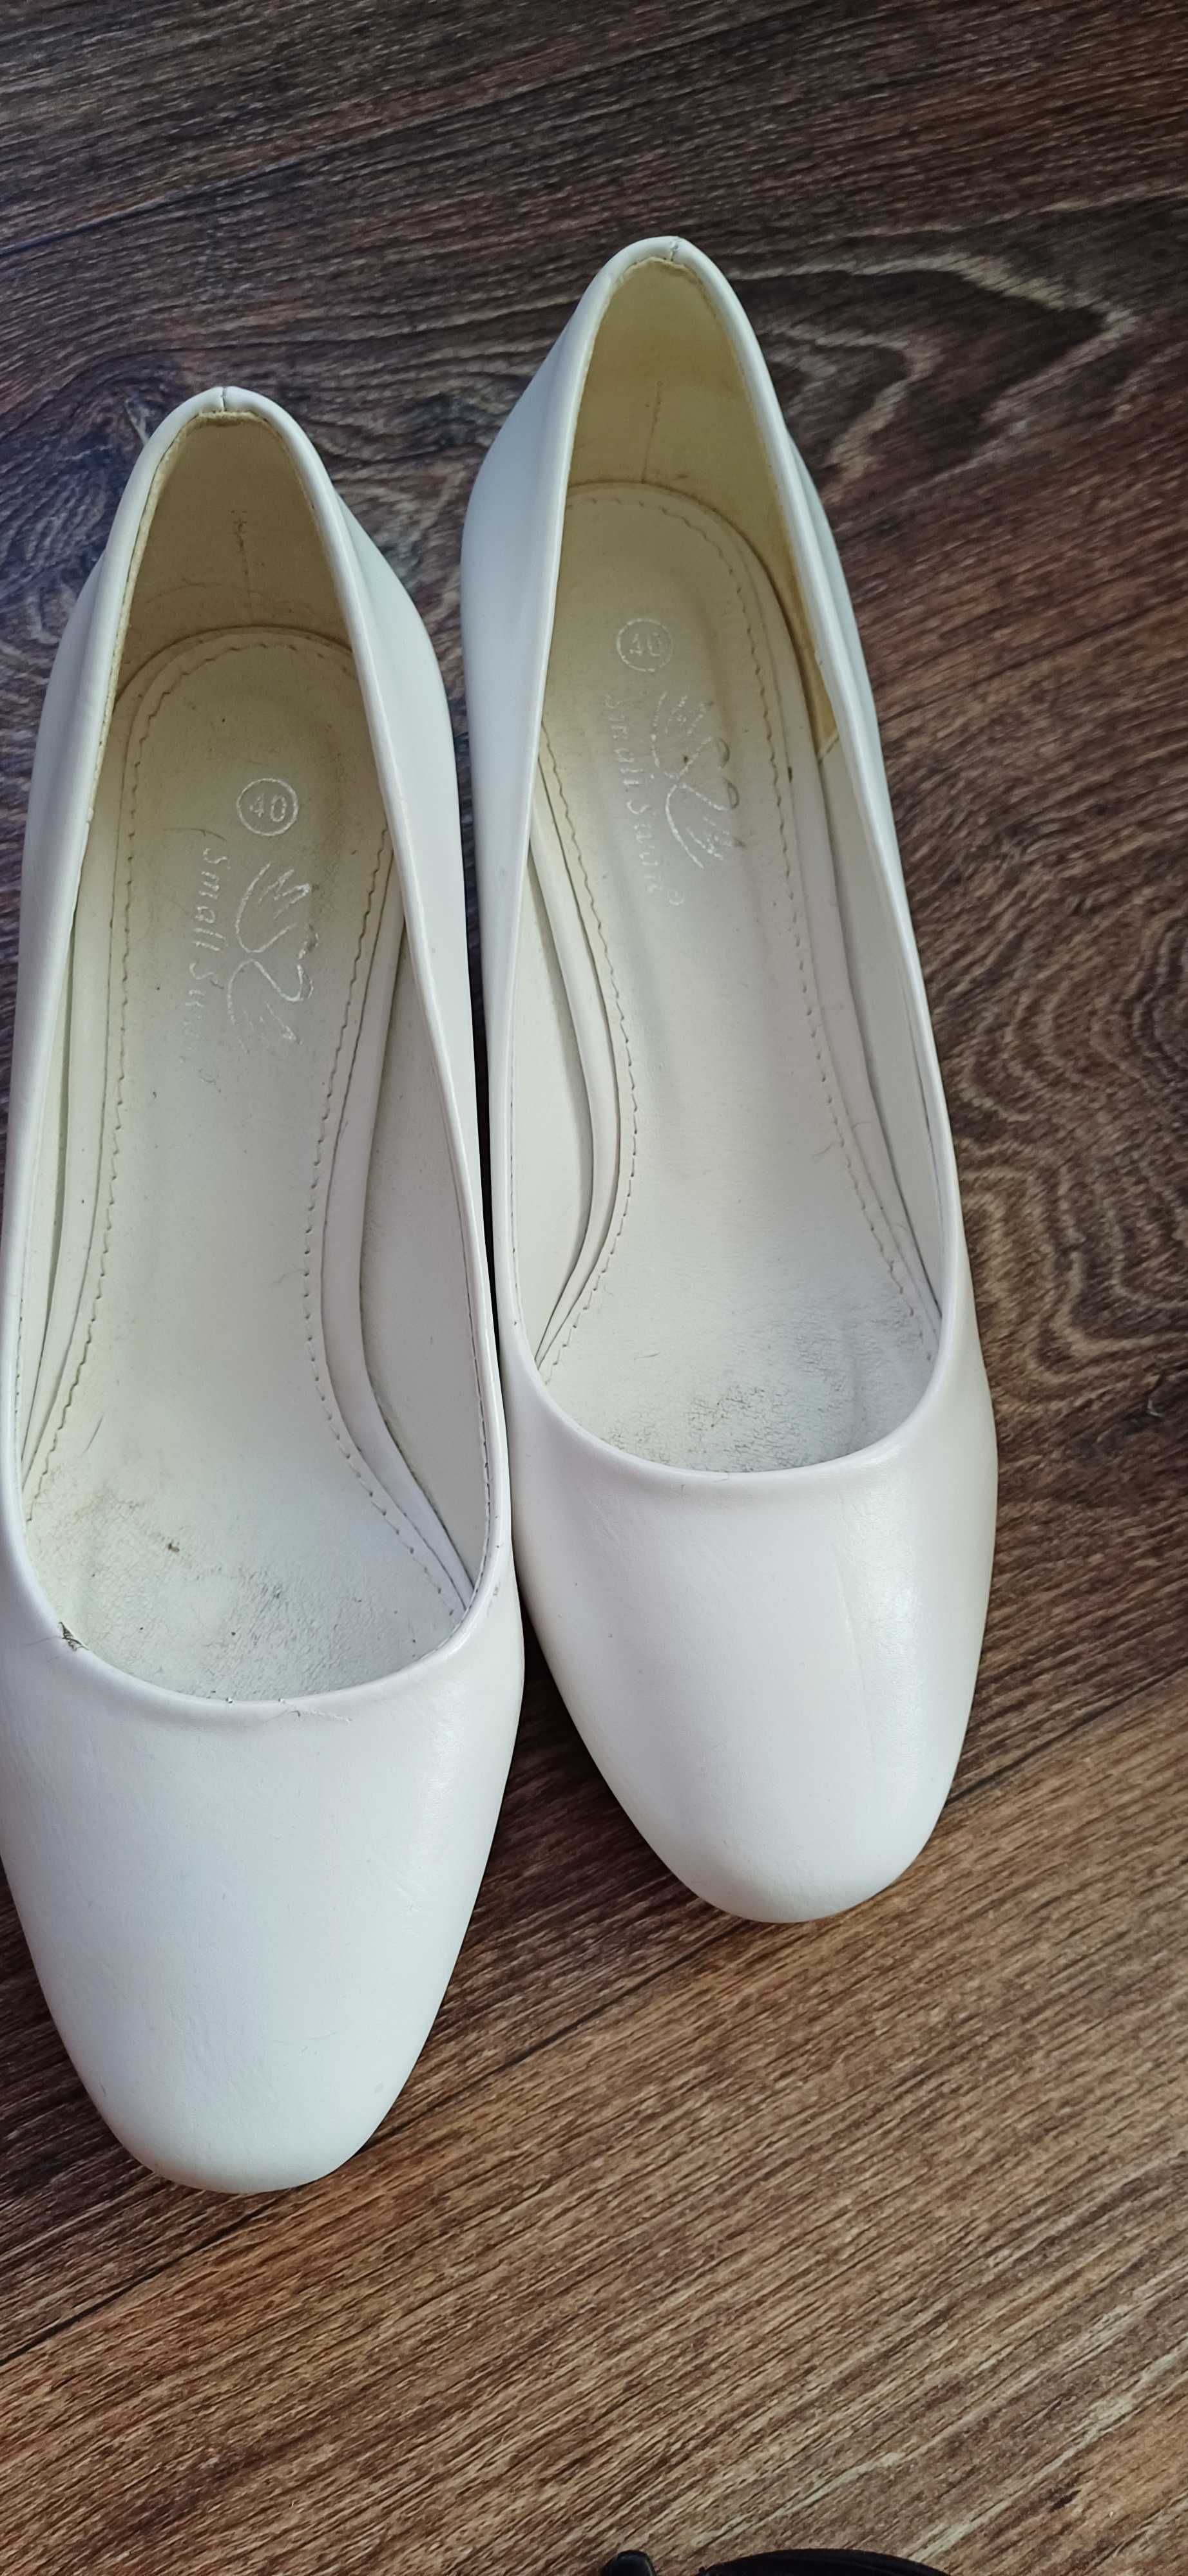 Женская обувь  (туфли,шлёпки,ботинки